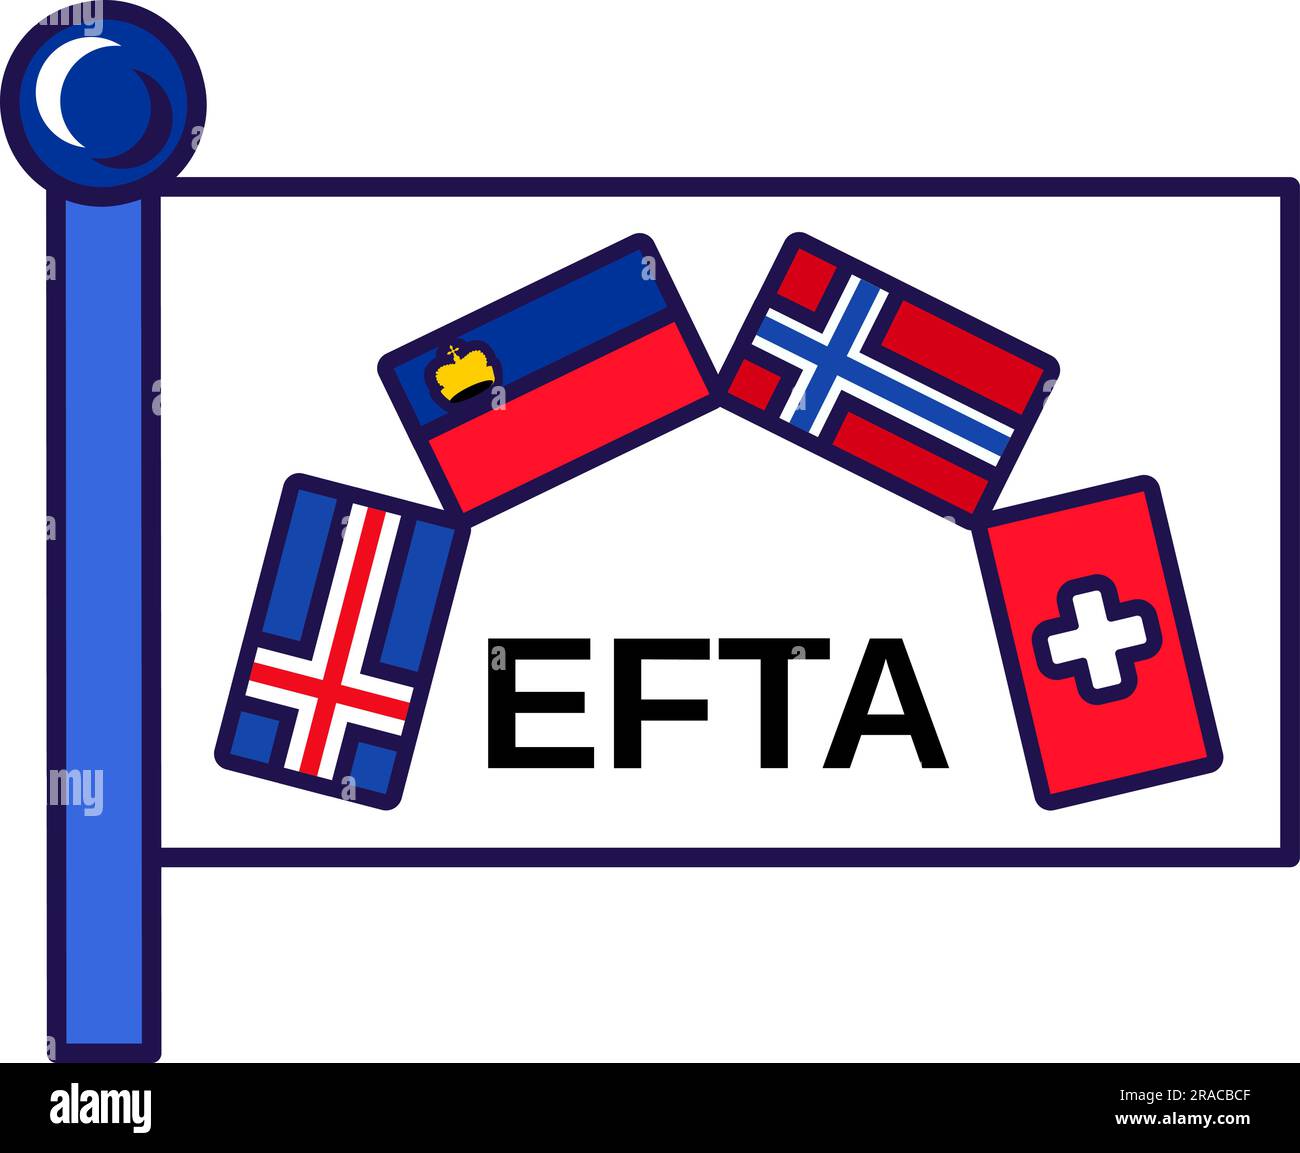 Vektor des Flaggenzeichens der Europäischen Freihandelsassoziation. Die EFTA-Handelsorganisation hat island, norwegen, liechtenstein und die schweiz symbolisch zur Flagge gekürt Stock Vektor